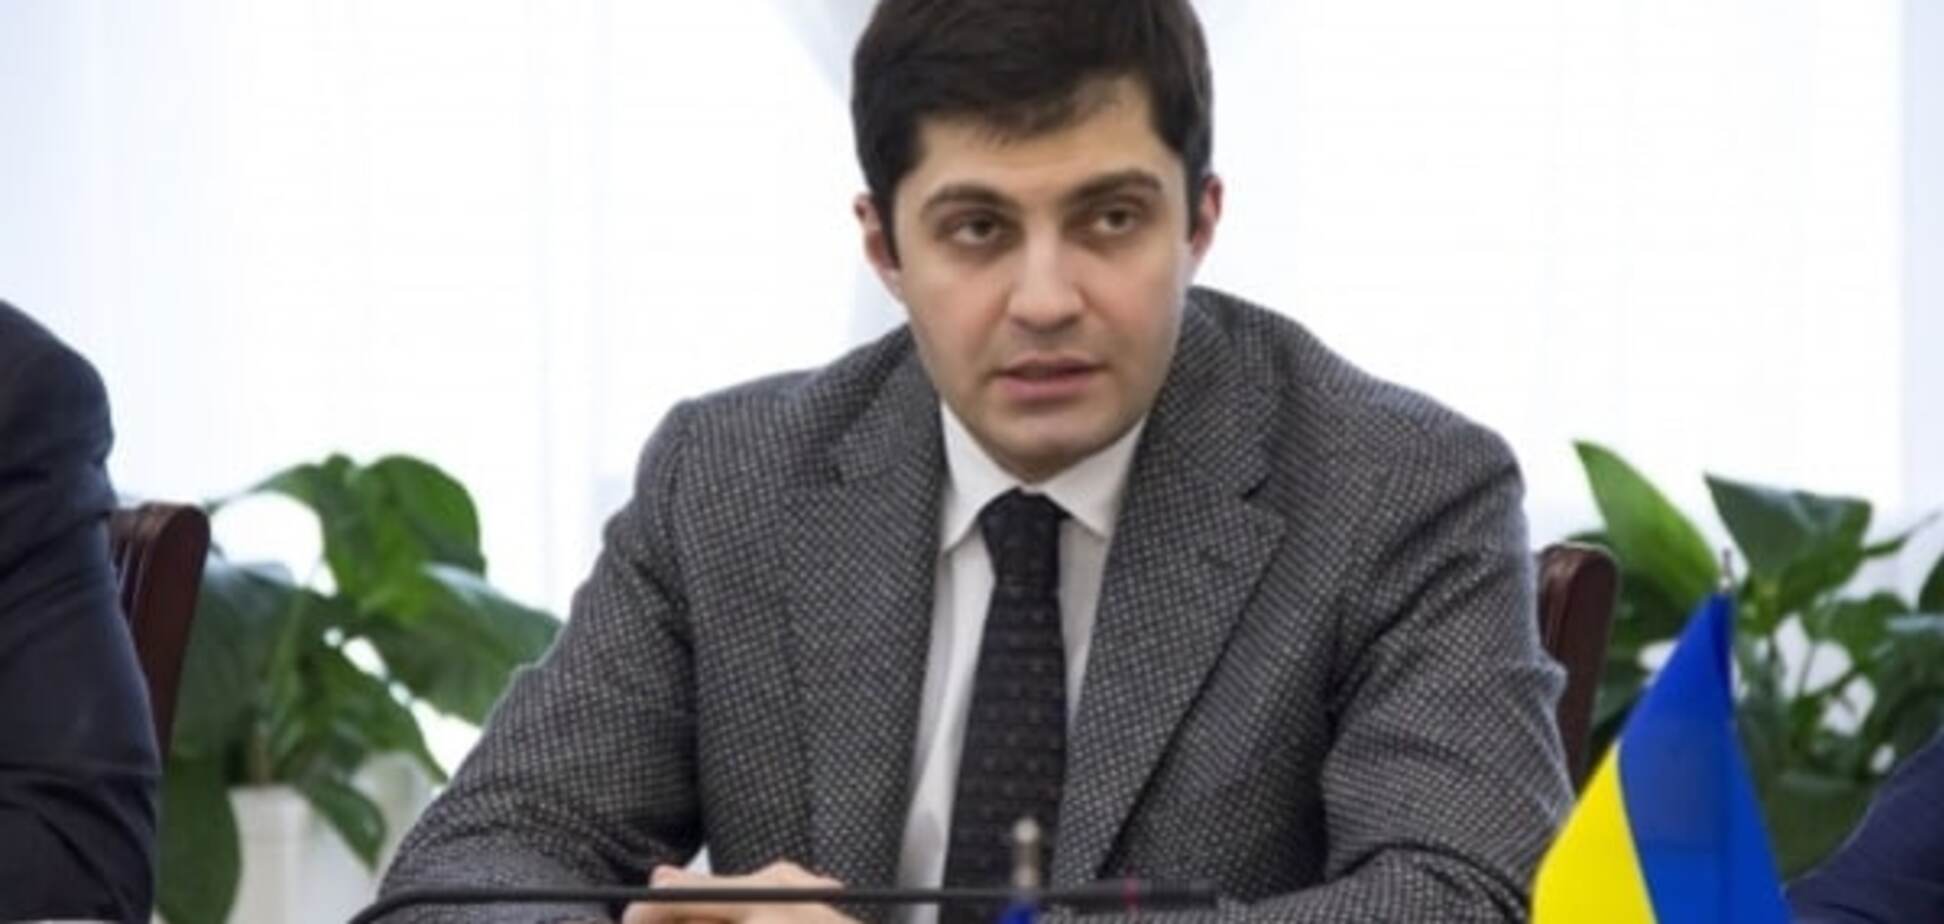 Сакварелидзе пояснил, почему на антикоррупционном форуме не было Яценюка